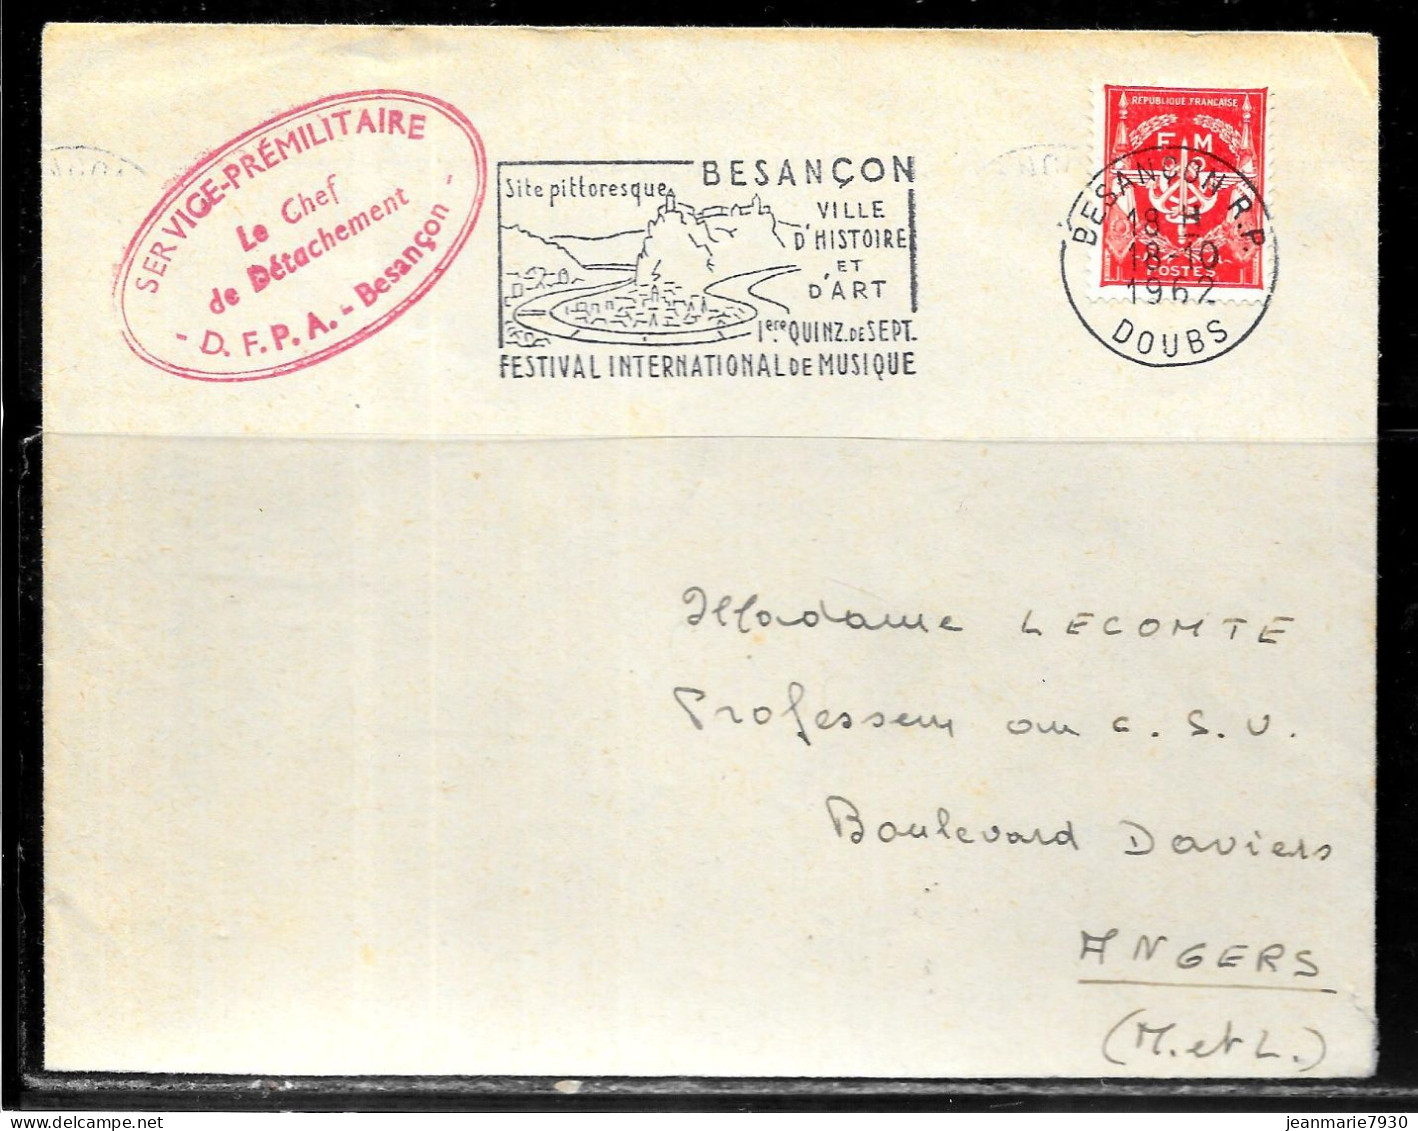 P259 - LETTRE EN FRANCHISE DE BESANCON DU 18/10/62 - CACHET CHEF DE DETACHEMENT D.F.P.A. - FLAMME FESTIVAL - Cartas & Documentos